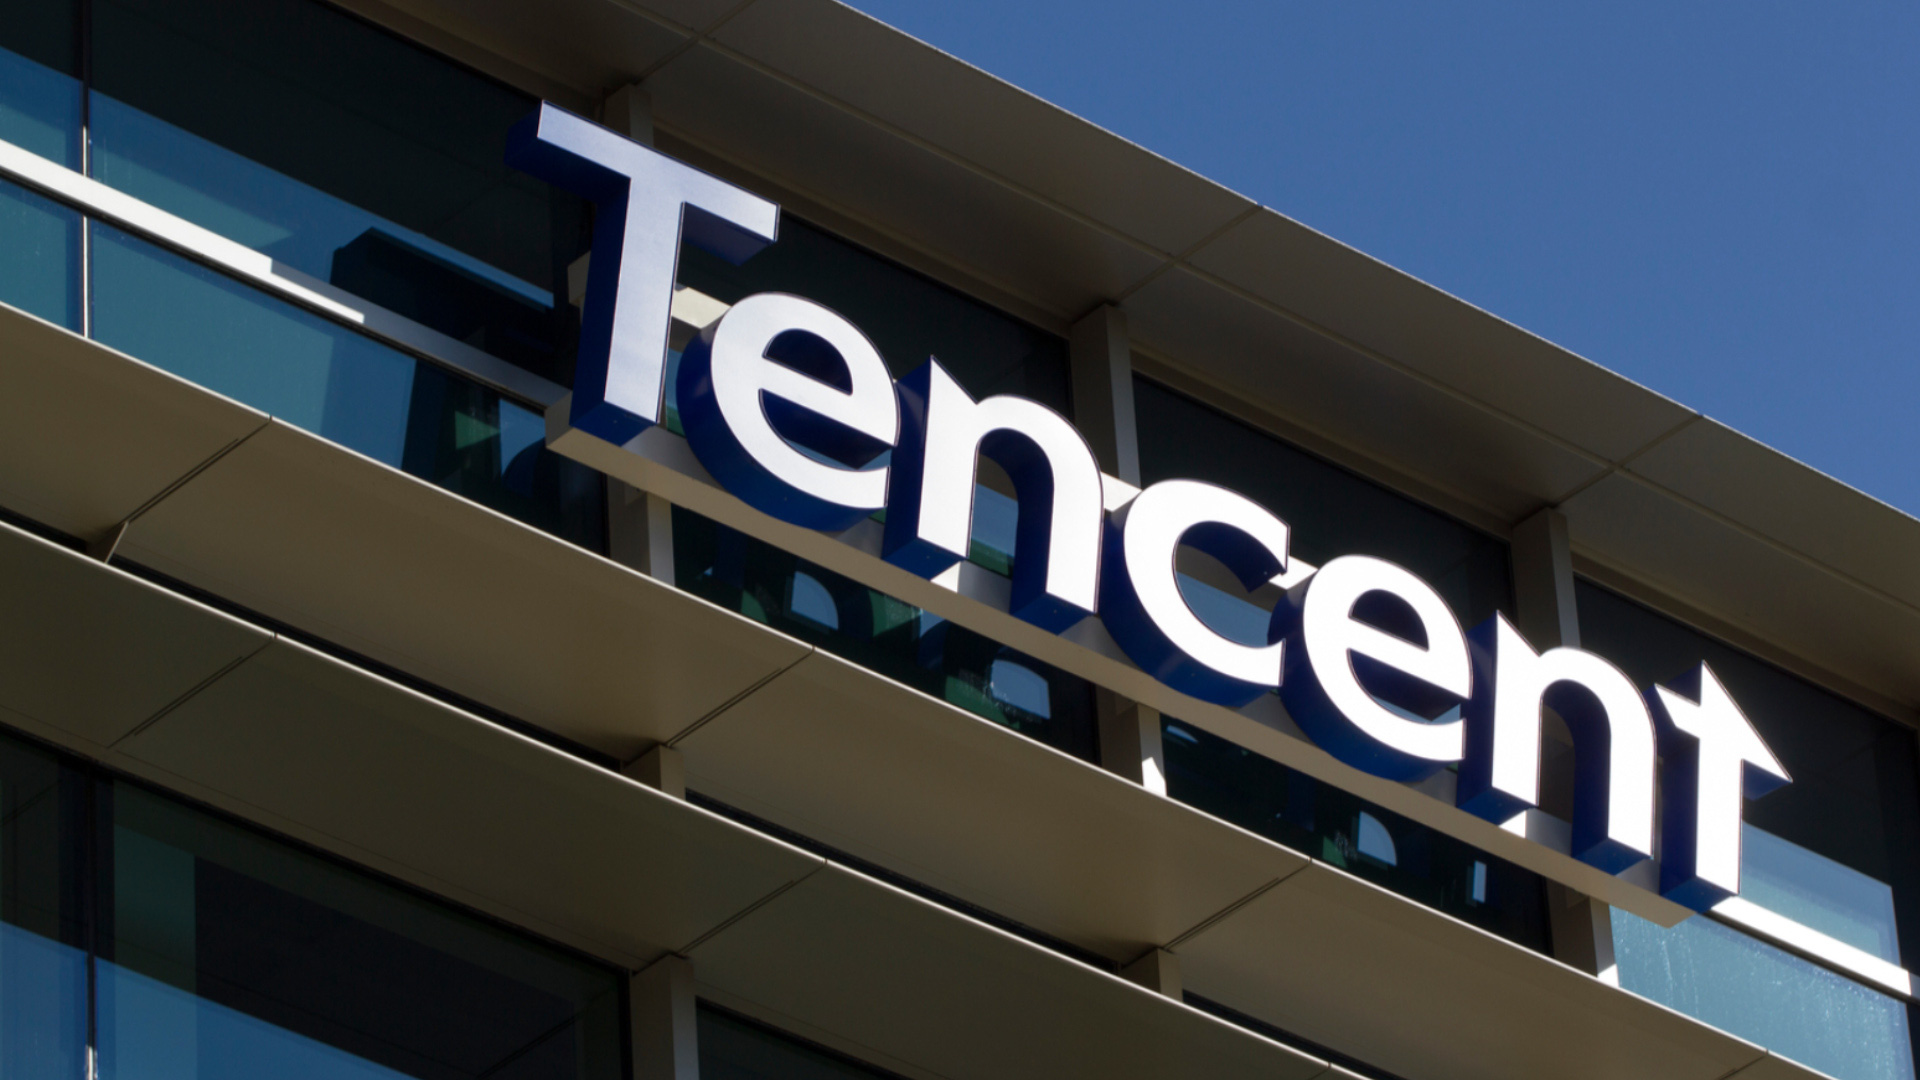 Tập đoàn game lớn nhất Trung Quốc: Tencent đã chính thức gia nhập hiệp hội công nghiệp game Hàn Quốc